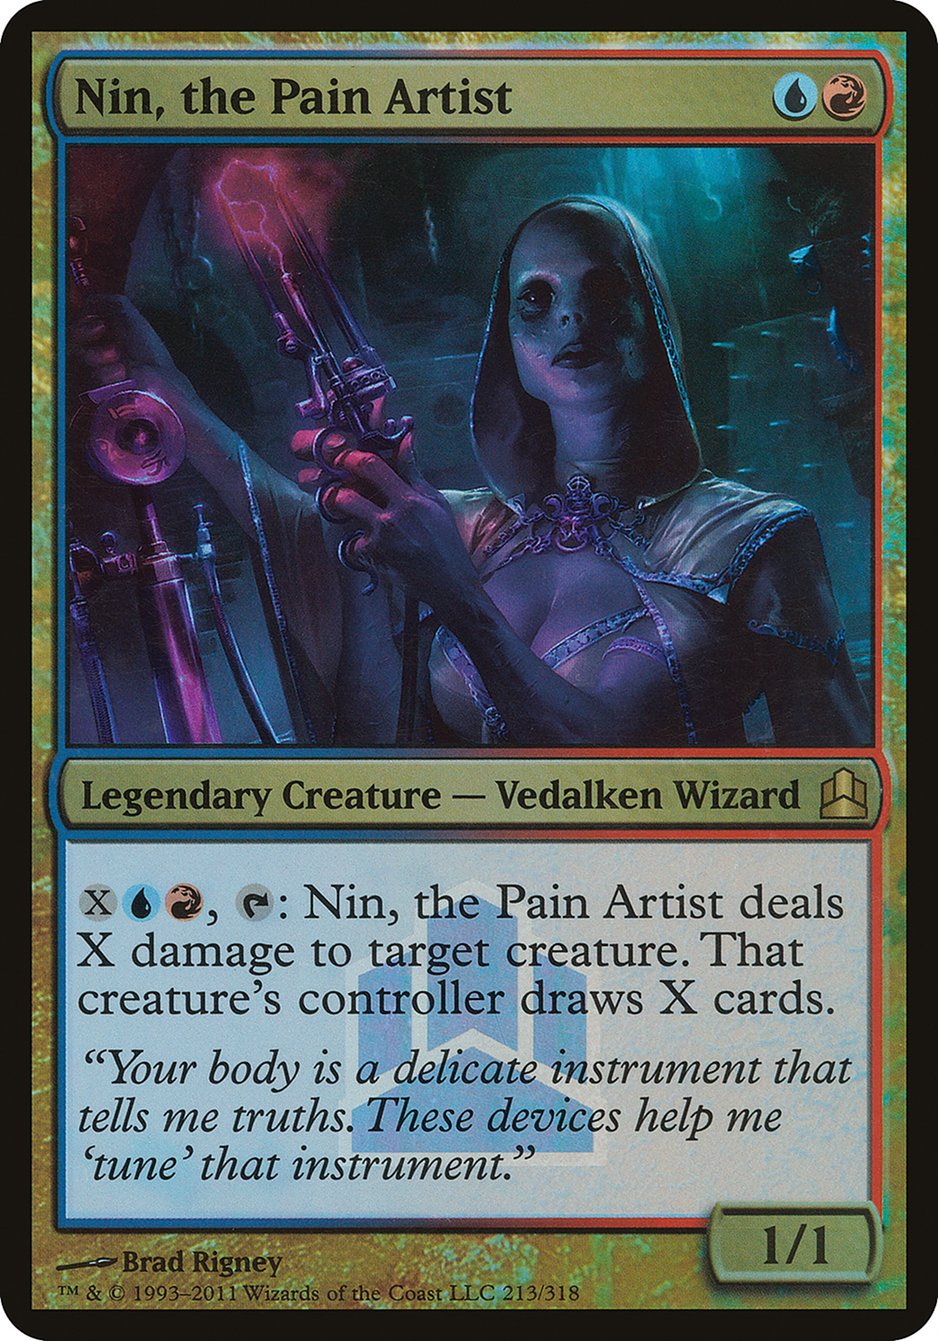 Nin, the Pain Artist (Launch) (Oversized) [Commander 2011 Oversized]